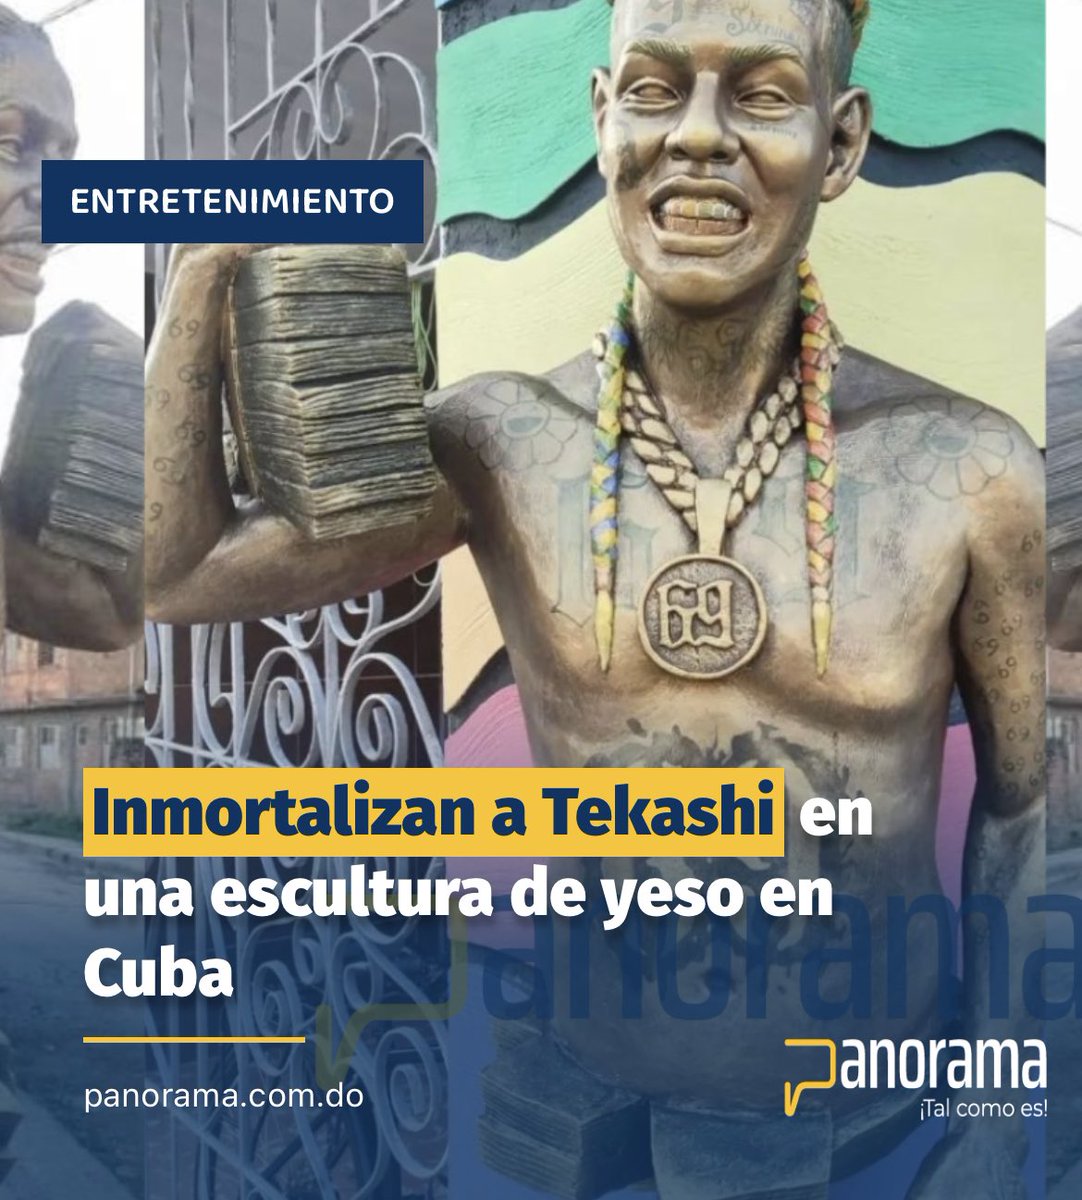 #Panorama_Entretenimiento 
Un escultor cubado ha inmortalizado la imagen del polémico rapero Tekashi 6ix9ine en una escultura de yeso.

Lea: panorama.com.do/inmortalizan-a…

Síguenos, comenta y comparte. 

#Panorama #Escultura #tekashi69 #tekashi #tekashi6ix9ine #Cuba